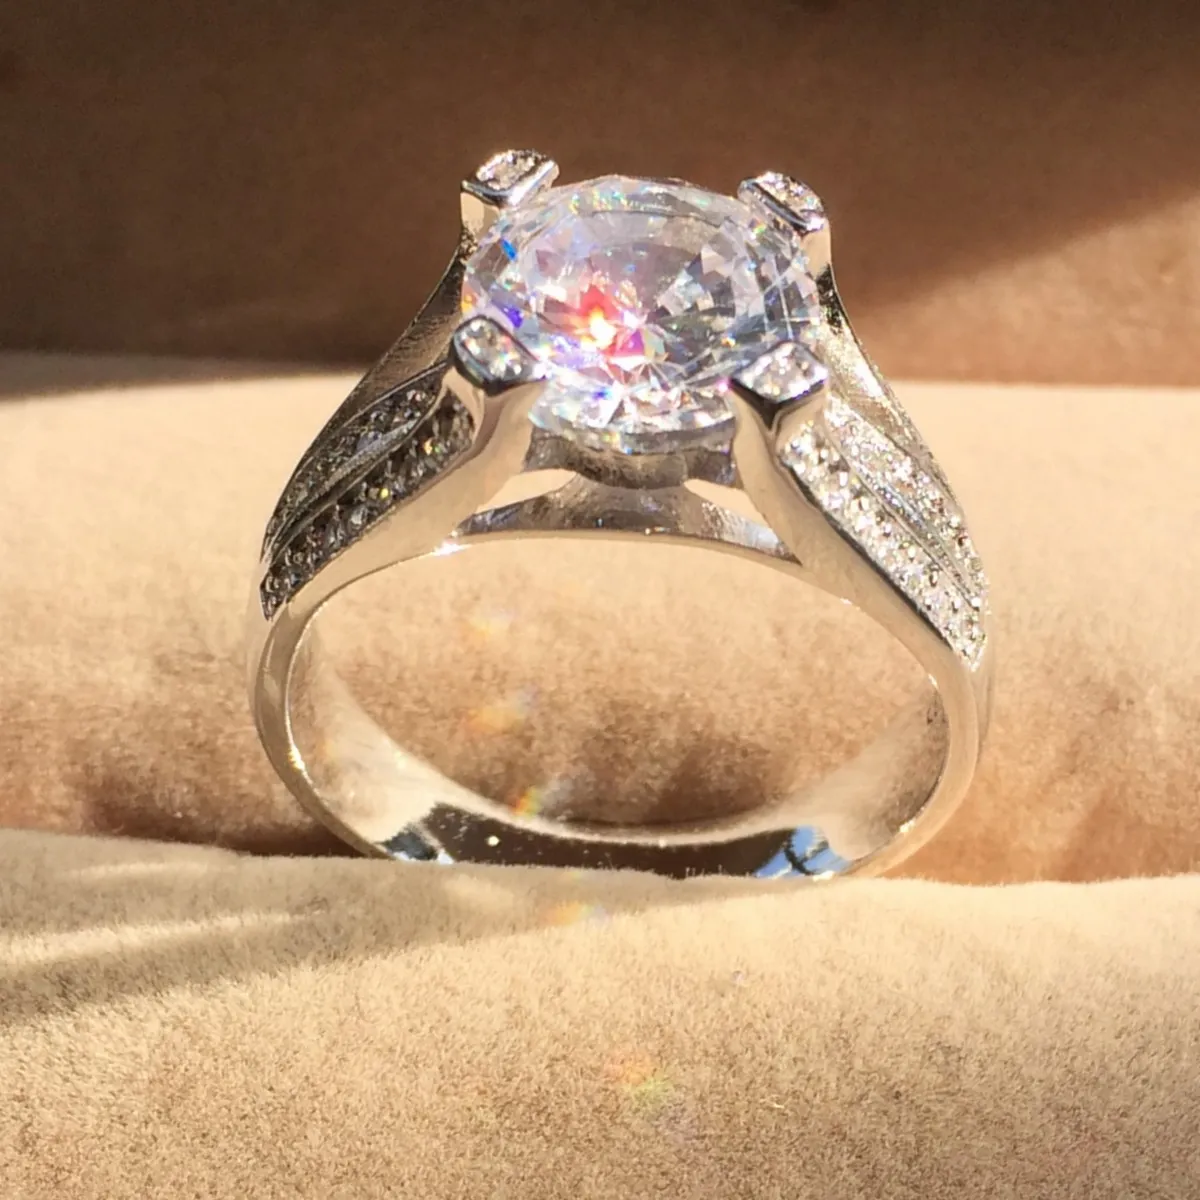 패션 925 스털링 실버 반지 여성 SZ 5-10에 대한 시뮬레이션 다이아몬드 보석 돌 Jweelry 약혼 결혼 신부 반지 3.6ct 큐빅 지르코니아